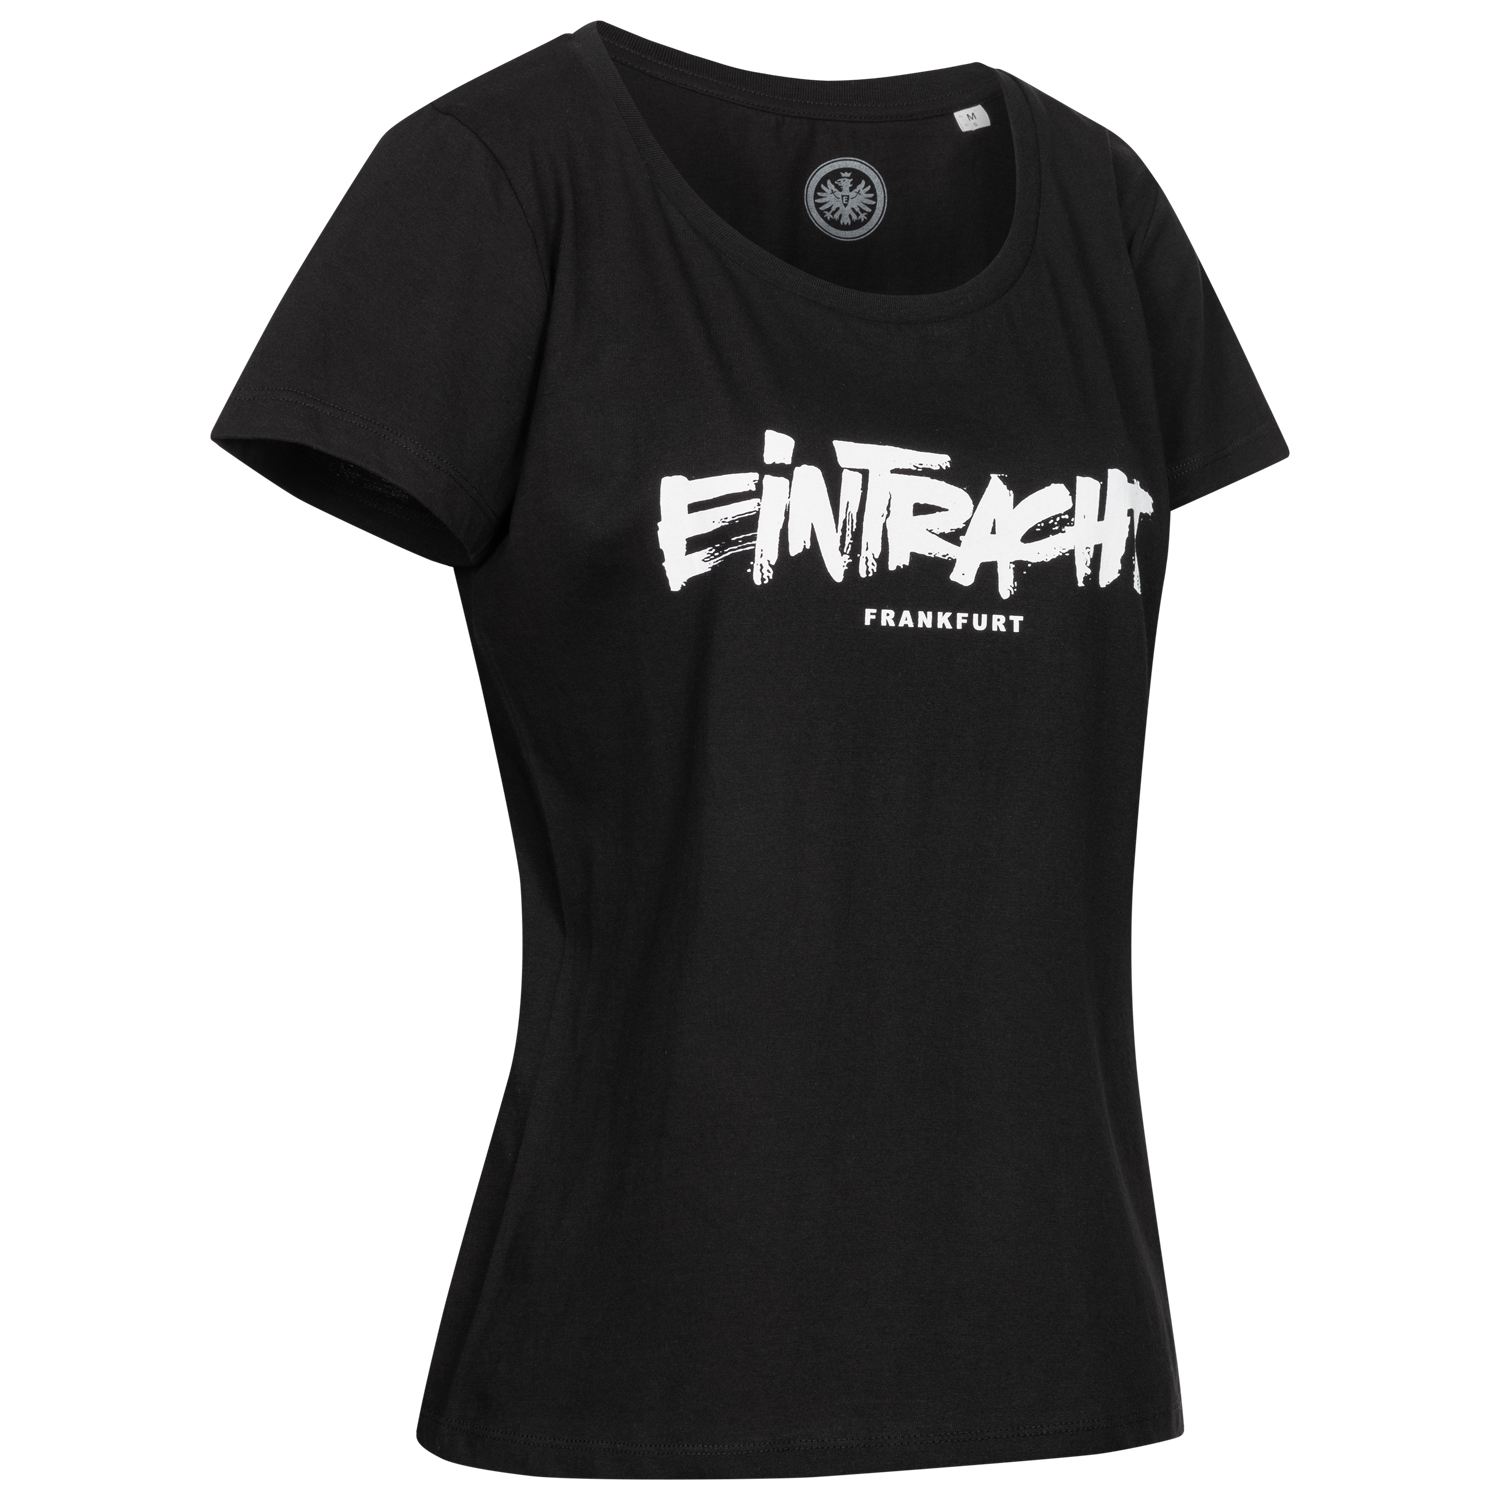 Bild 3: Damen T-Shirt Eintracht